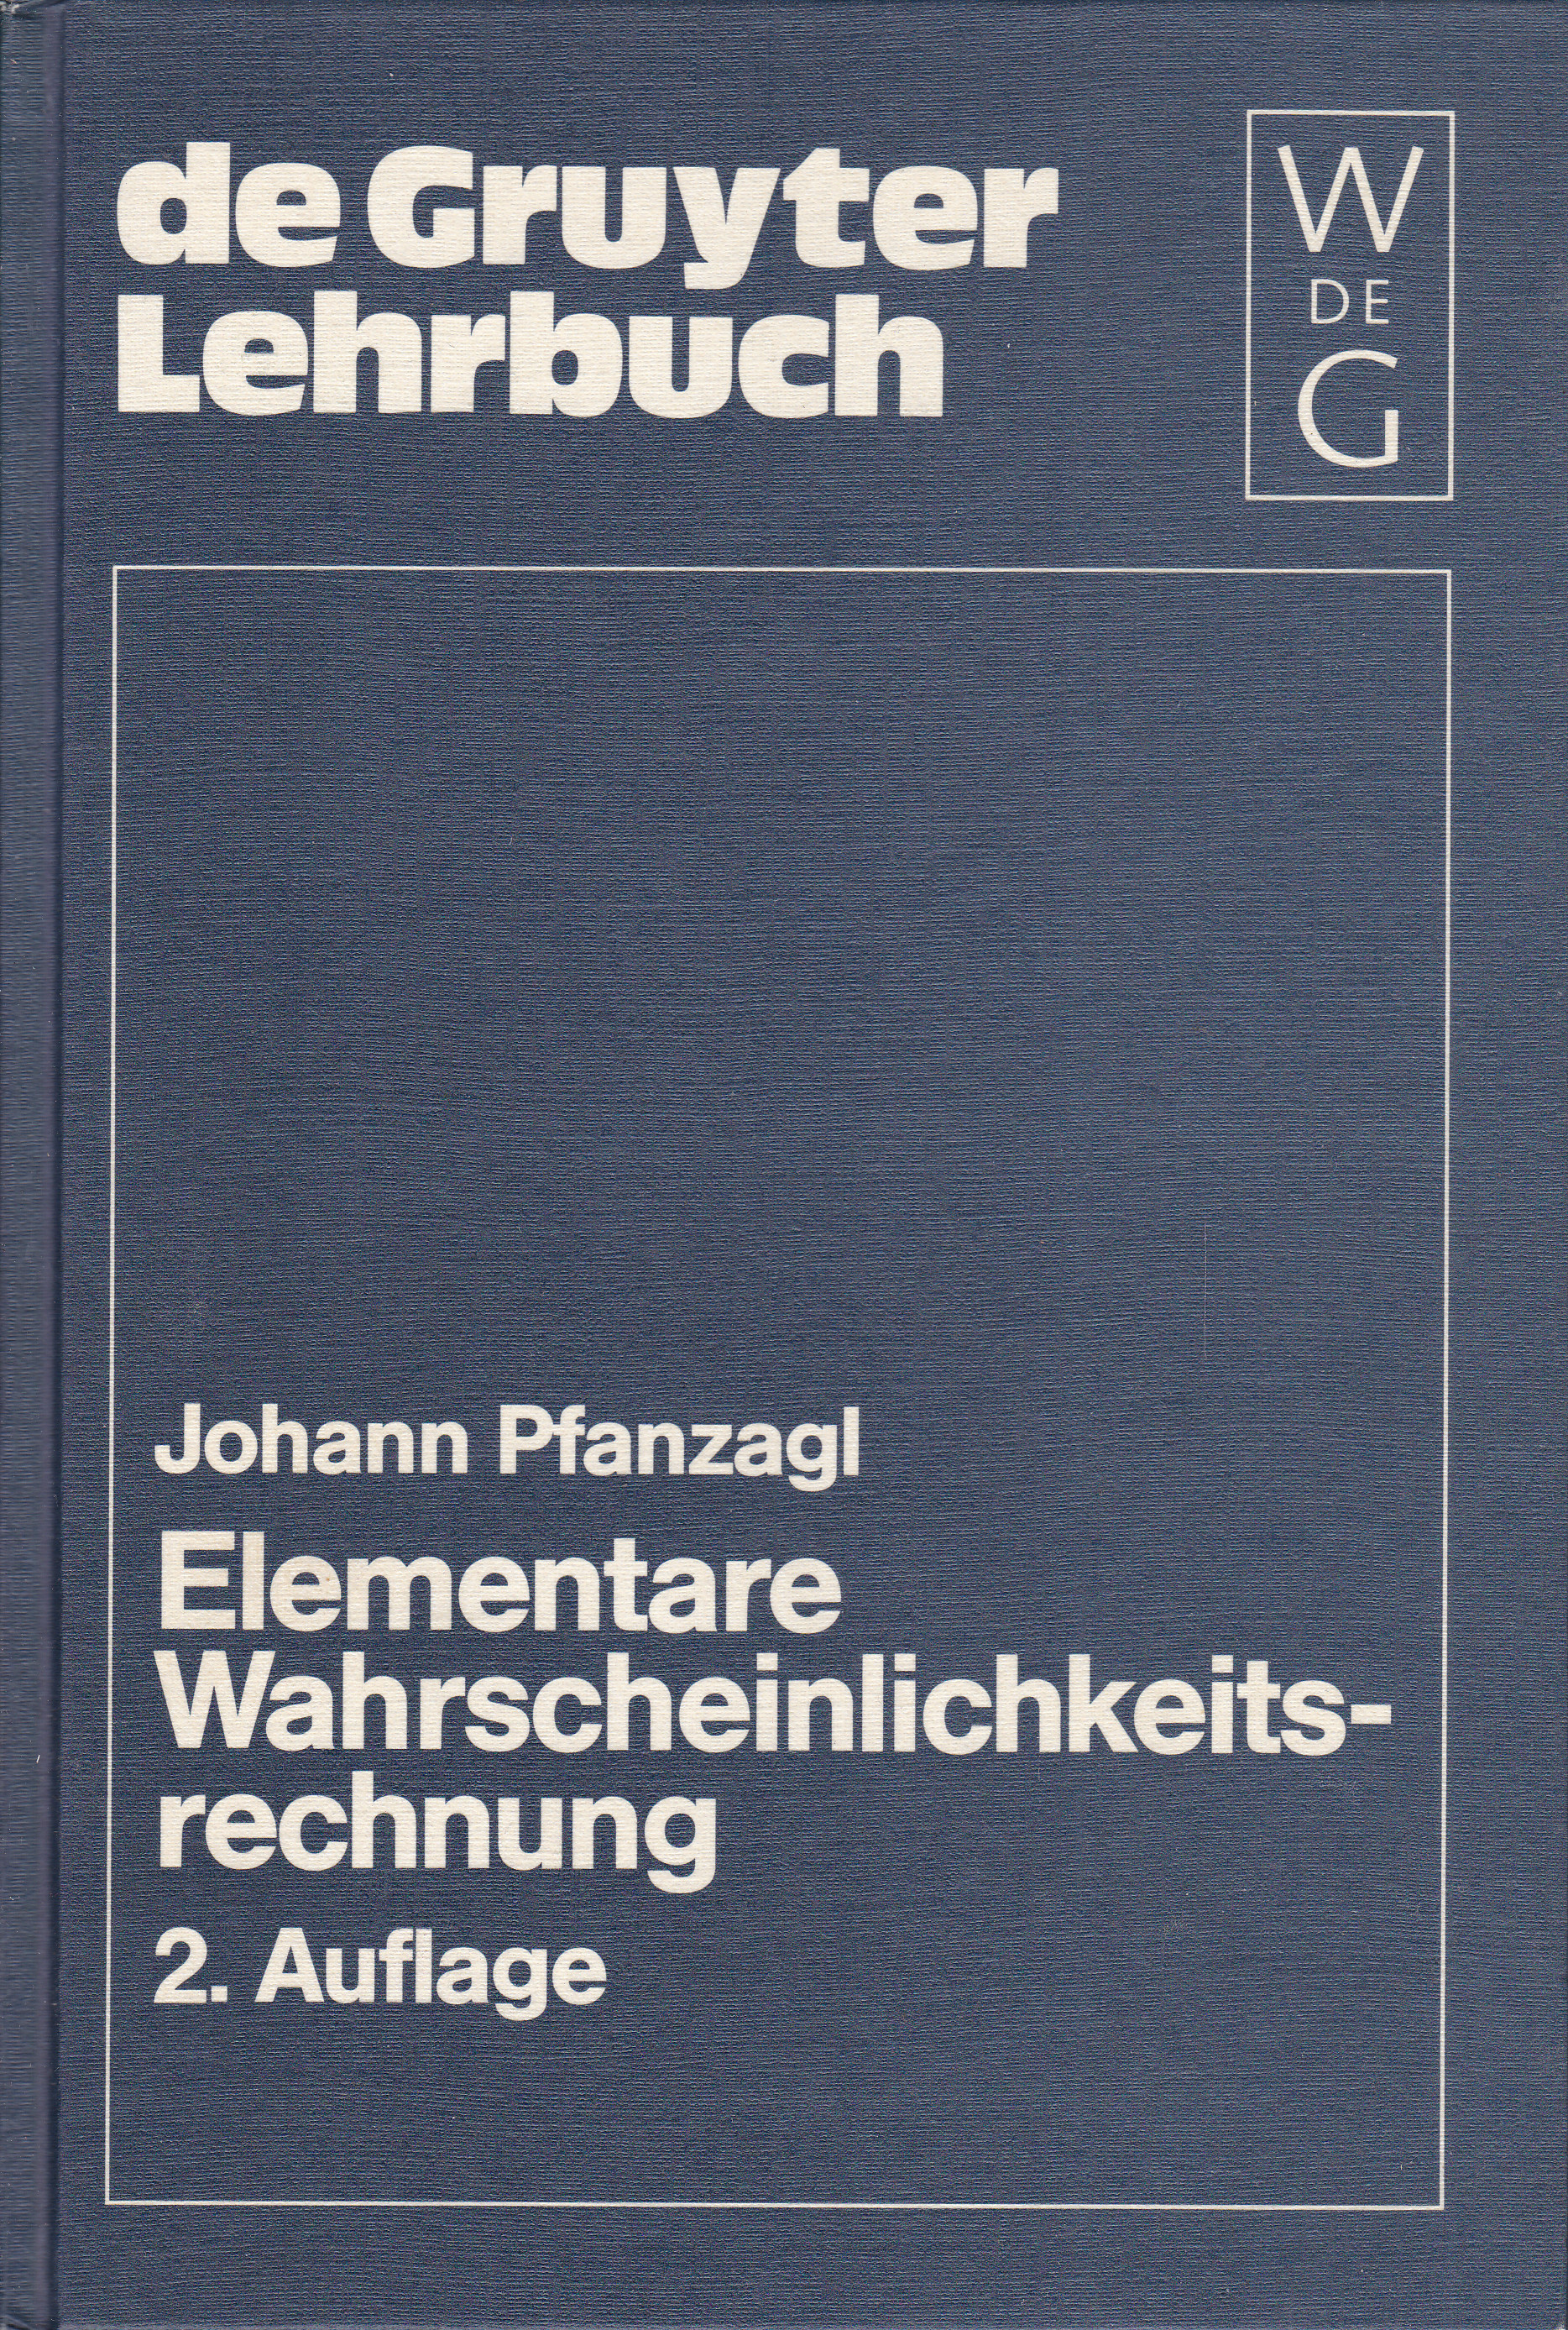 Elementare Wahrscheinlichkeitsrechnung - Pfanzagl, Johann